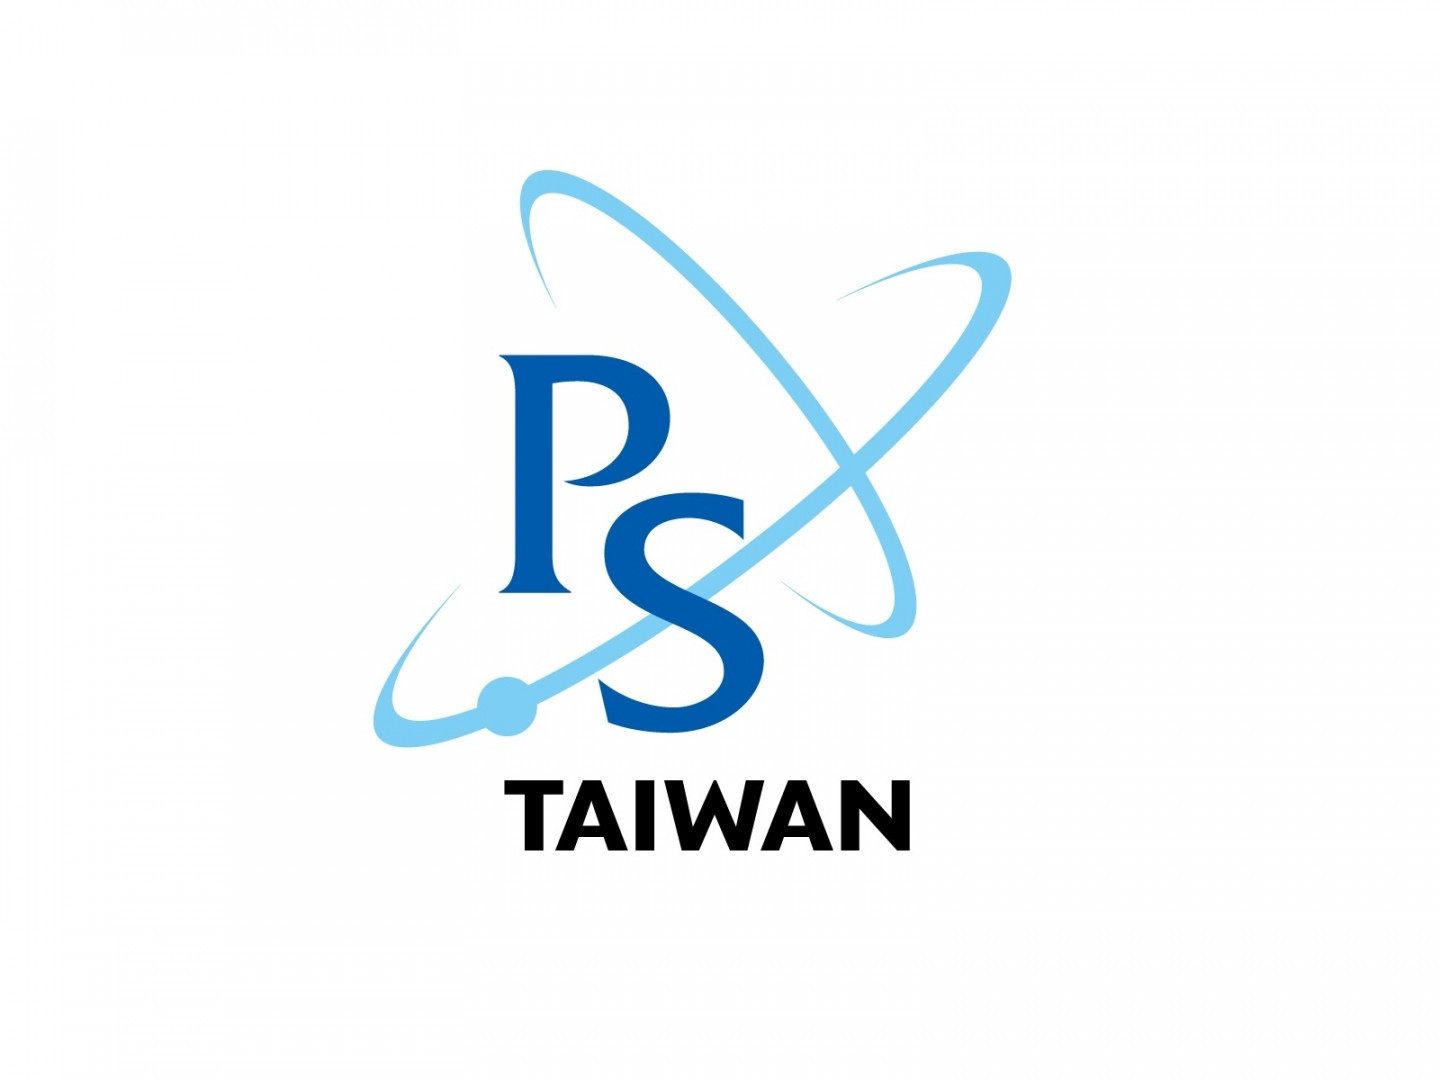  台灣物理學會 因應國際女性科學科技研討會 調整聯絡方式 